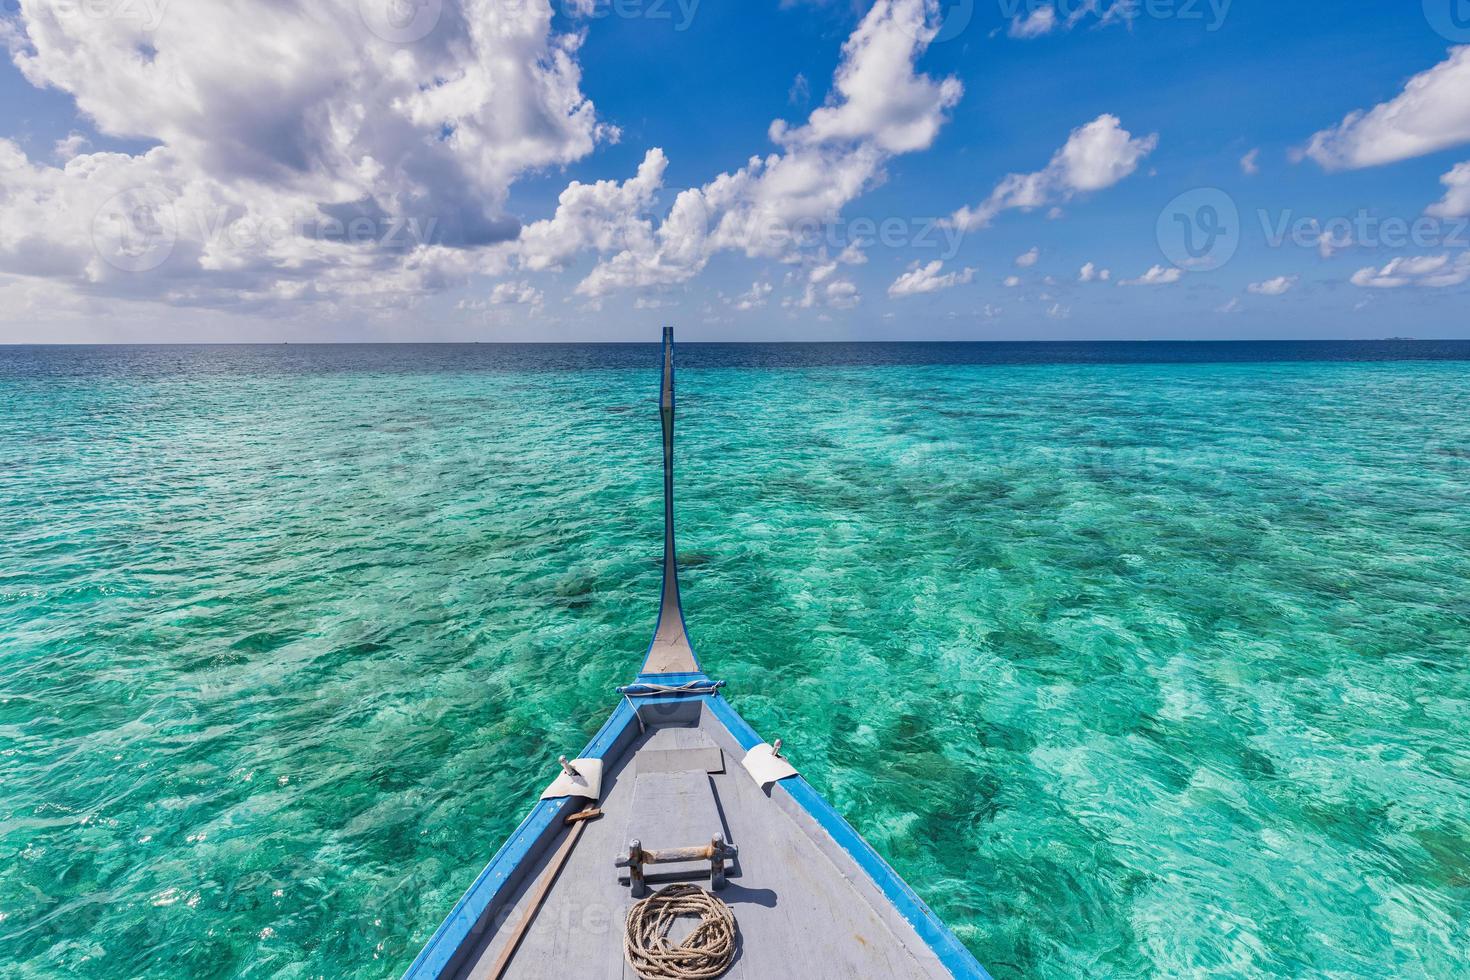 barco na água do oceano turquesa contra o céu azul com nuvens brancas sobre lagoa tropical. paisagem marinha natural para férias de verão, vista panorâmica nas ilhas maldivas. barco dhoni, viagens exóticas foto